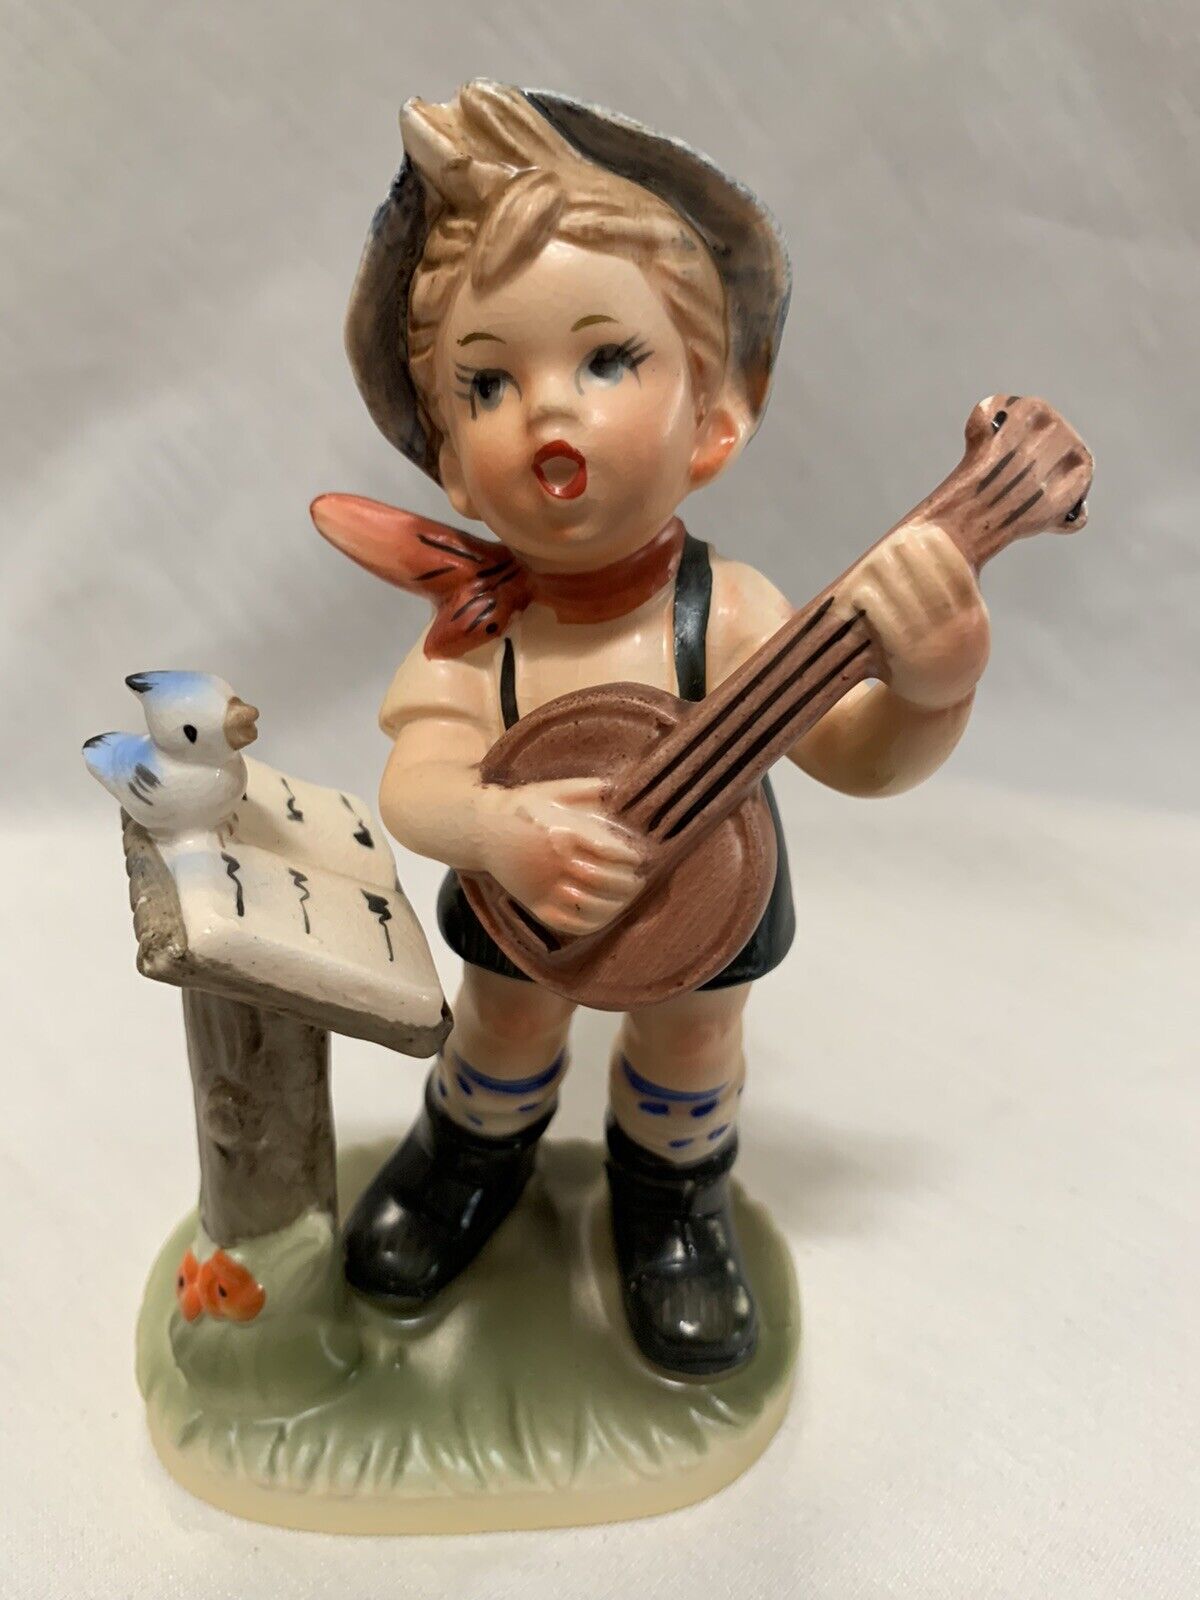 Vintage Napcoware Figurine Boy Playing Violin Porcelain Made in Japan. 8850